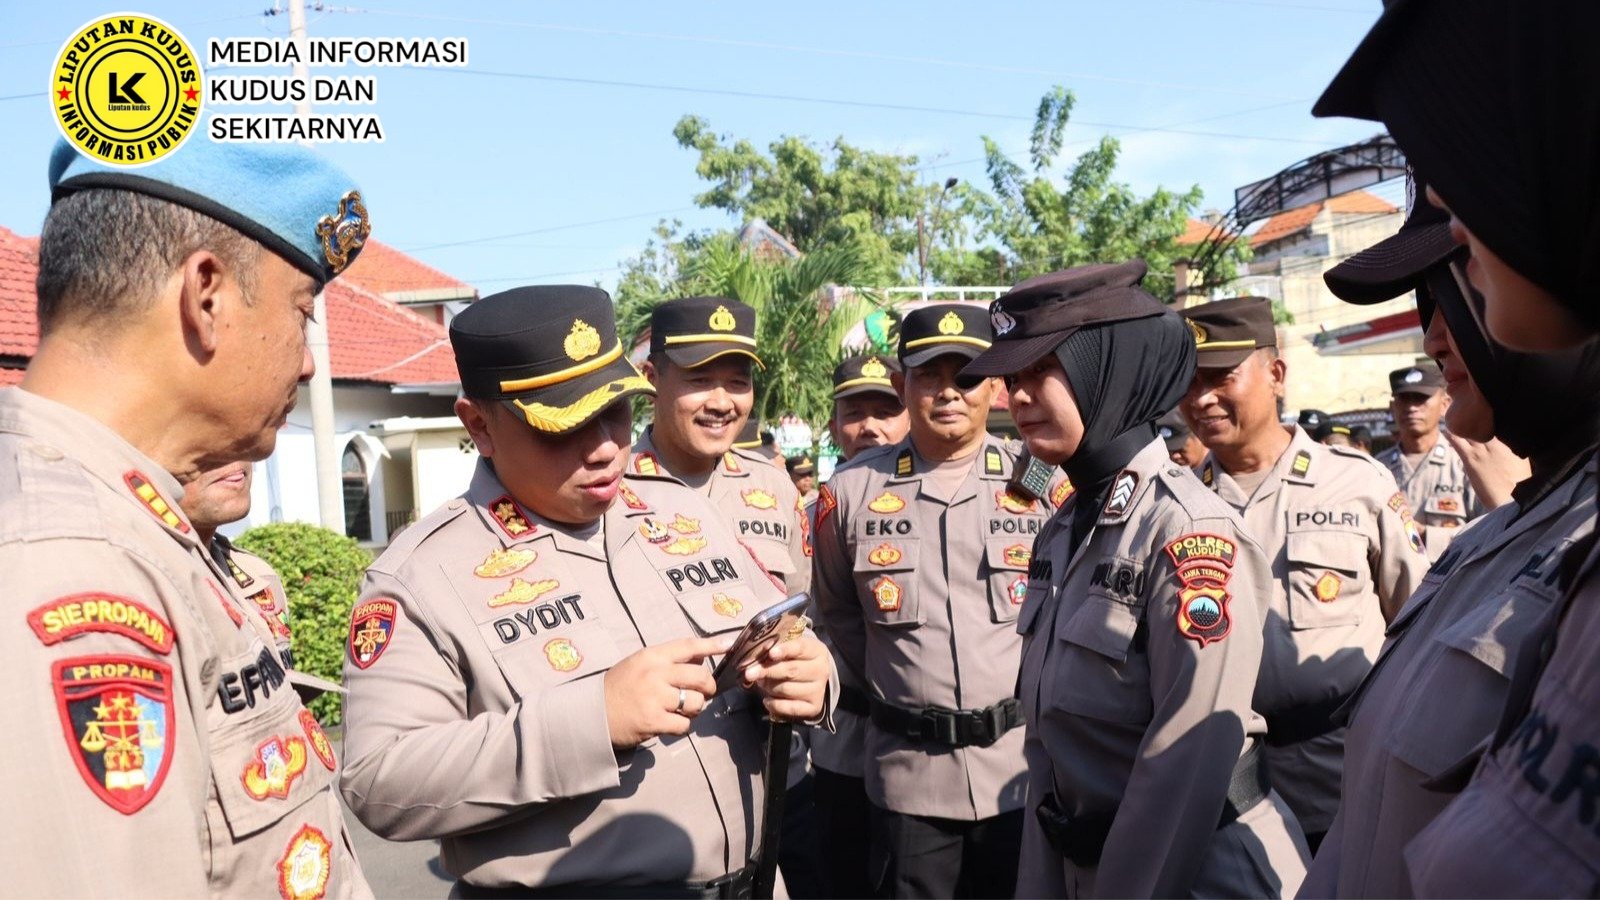 Cegah Judi Online di Anggota Kepolisian, Polres Kudus Gelar Pemeriksaan Ponsel Perwira dan Bintara